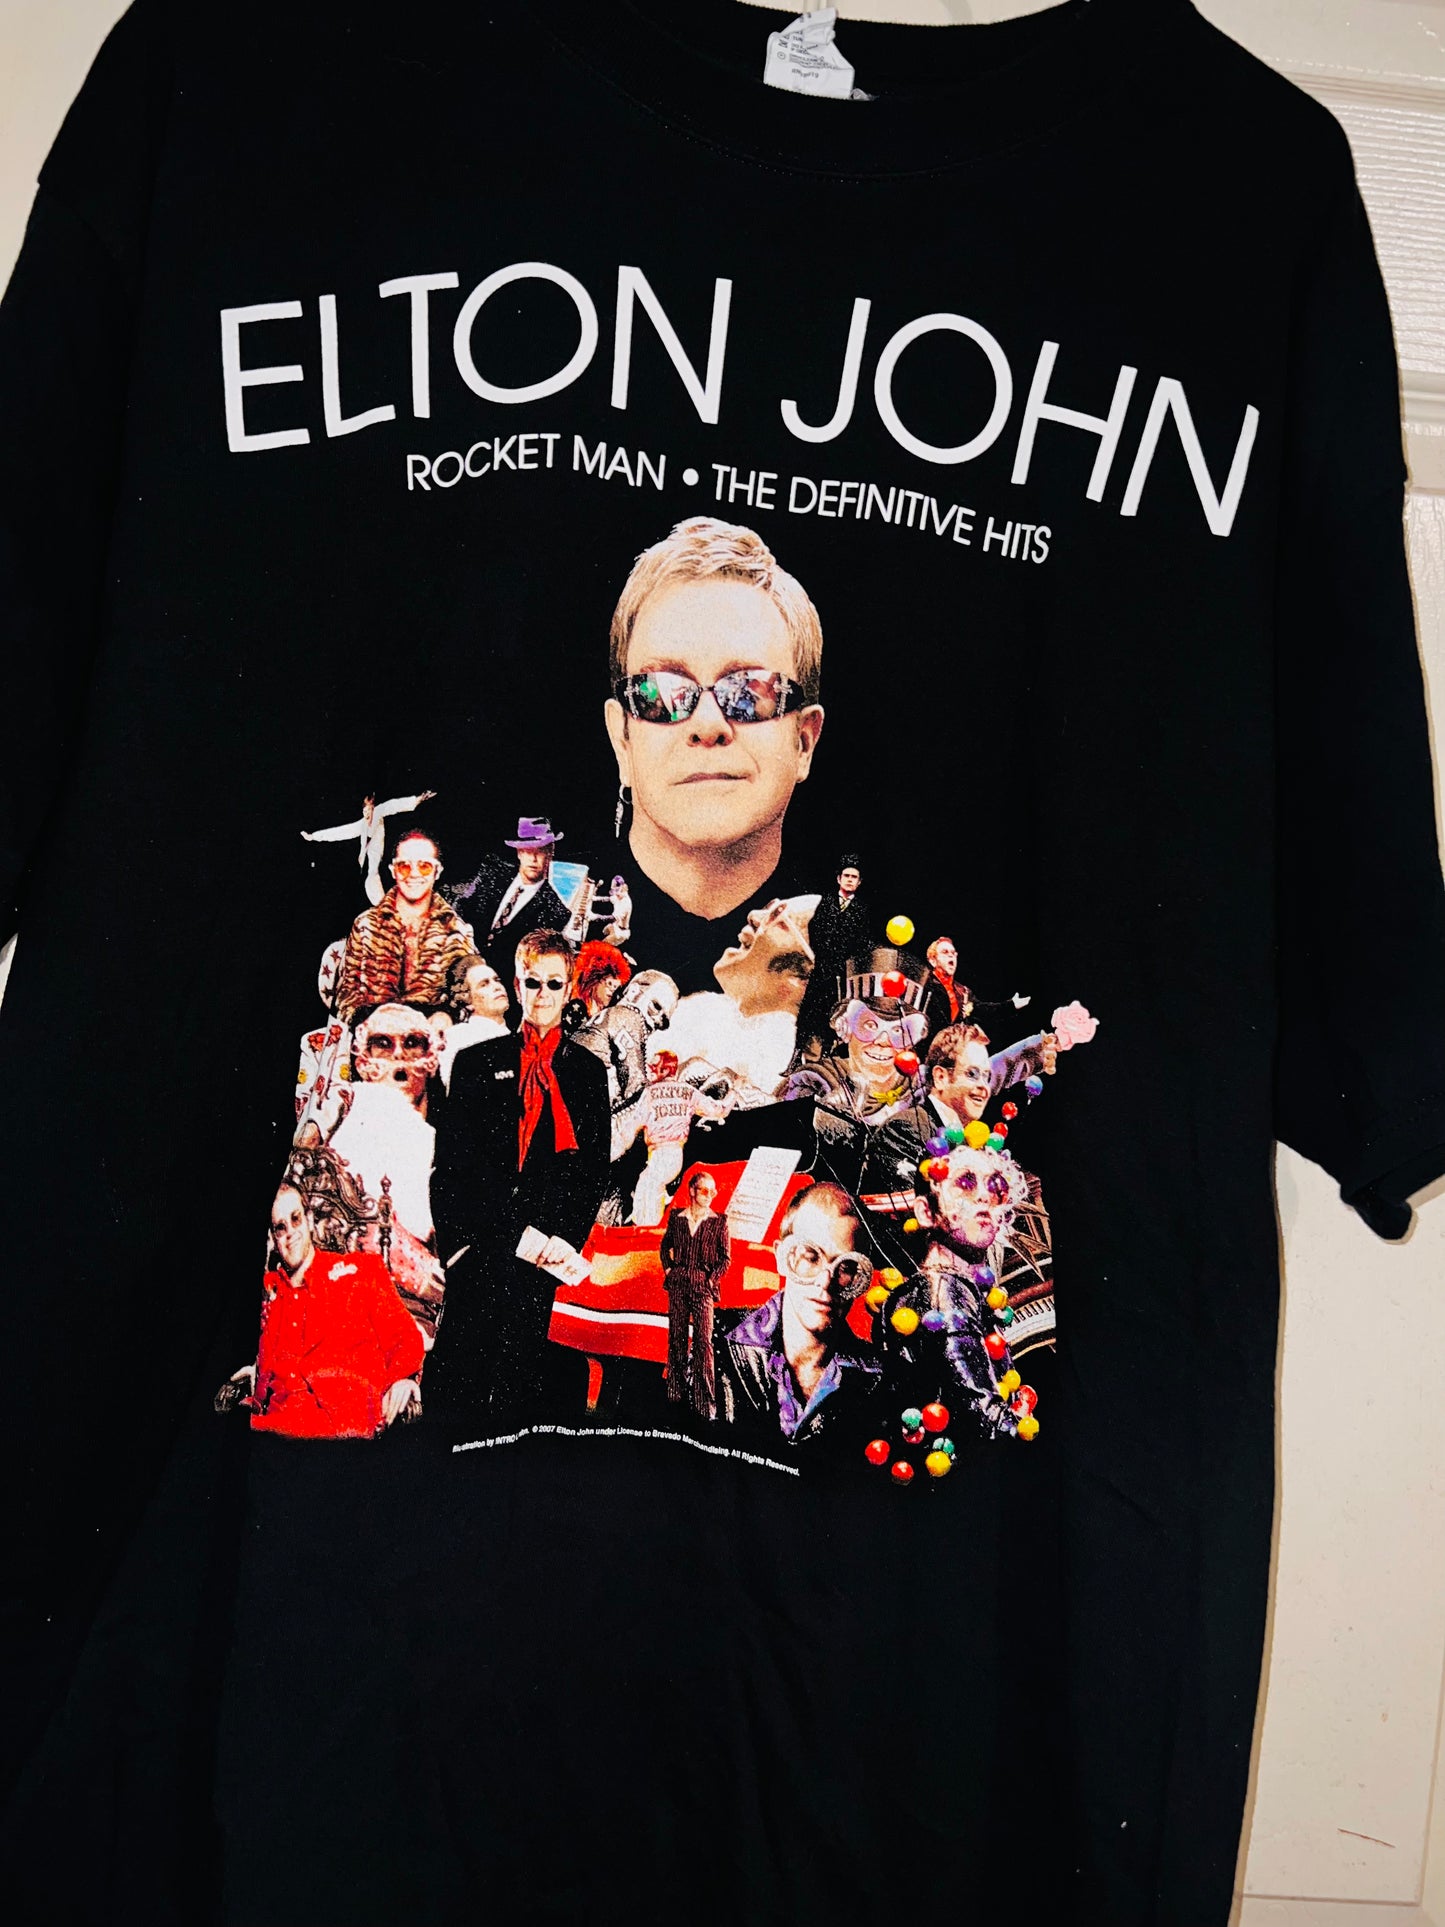 2008 Vintage Elton John Oversized Tee